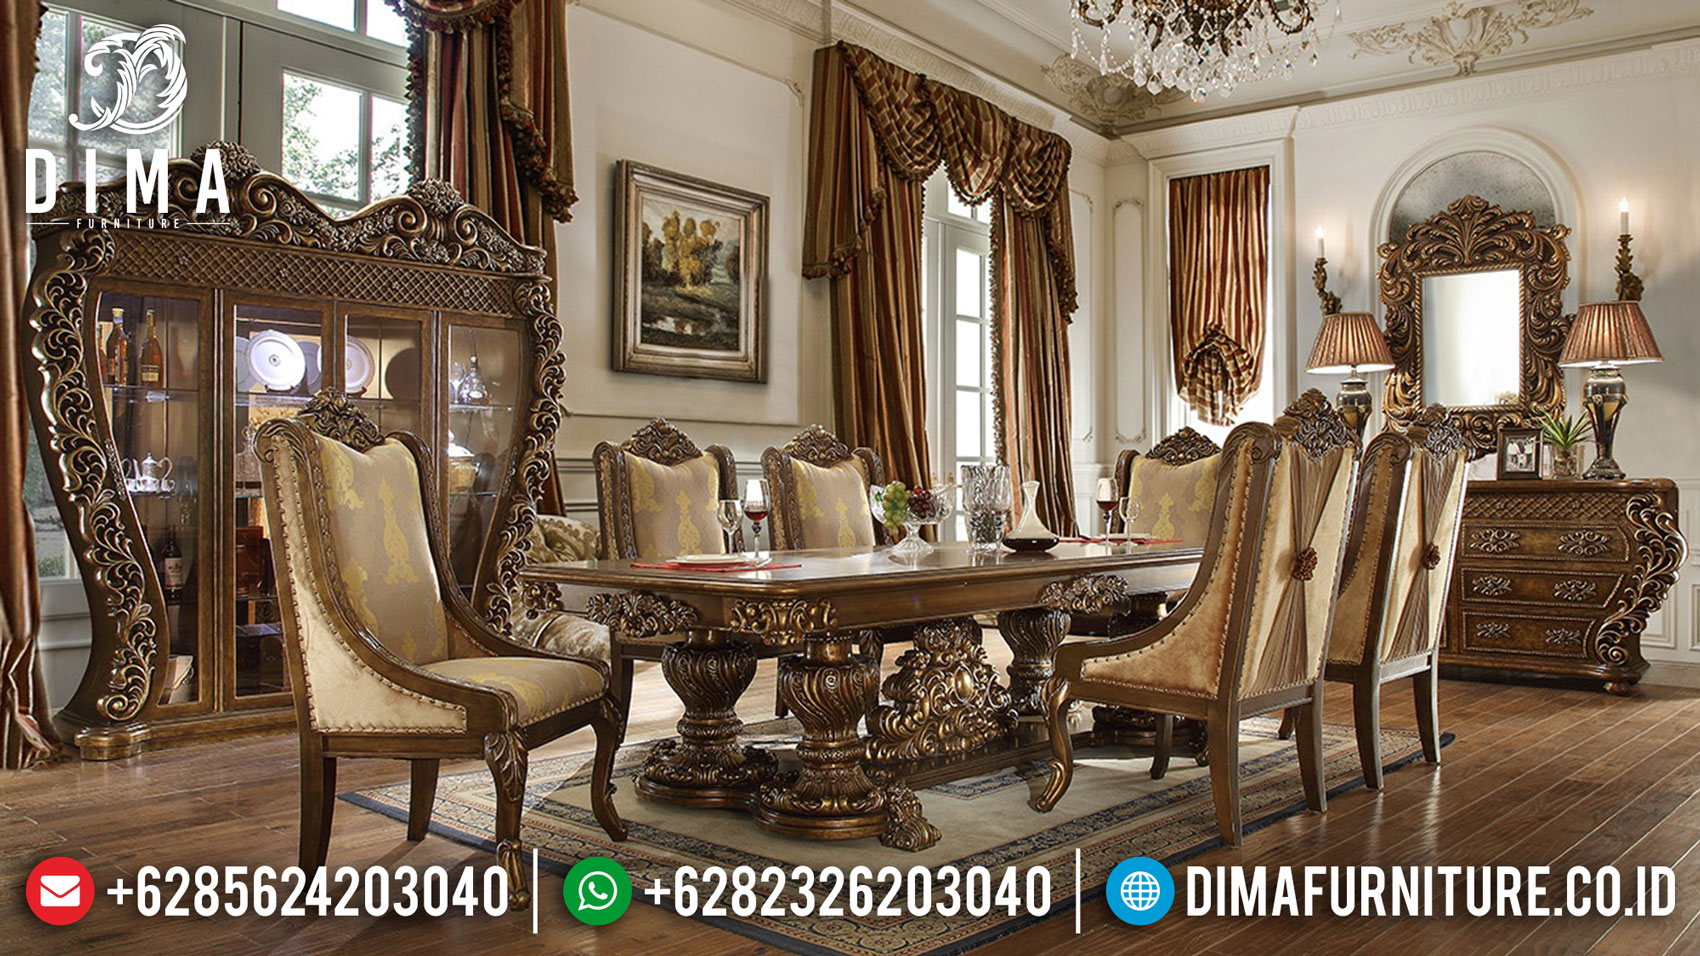 Best Sale Meja Makan Mewah Giardino Luxury Carving New Furniture Jepara St-1249